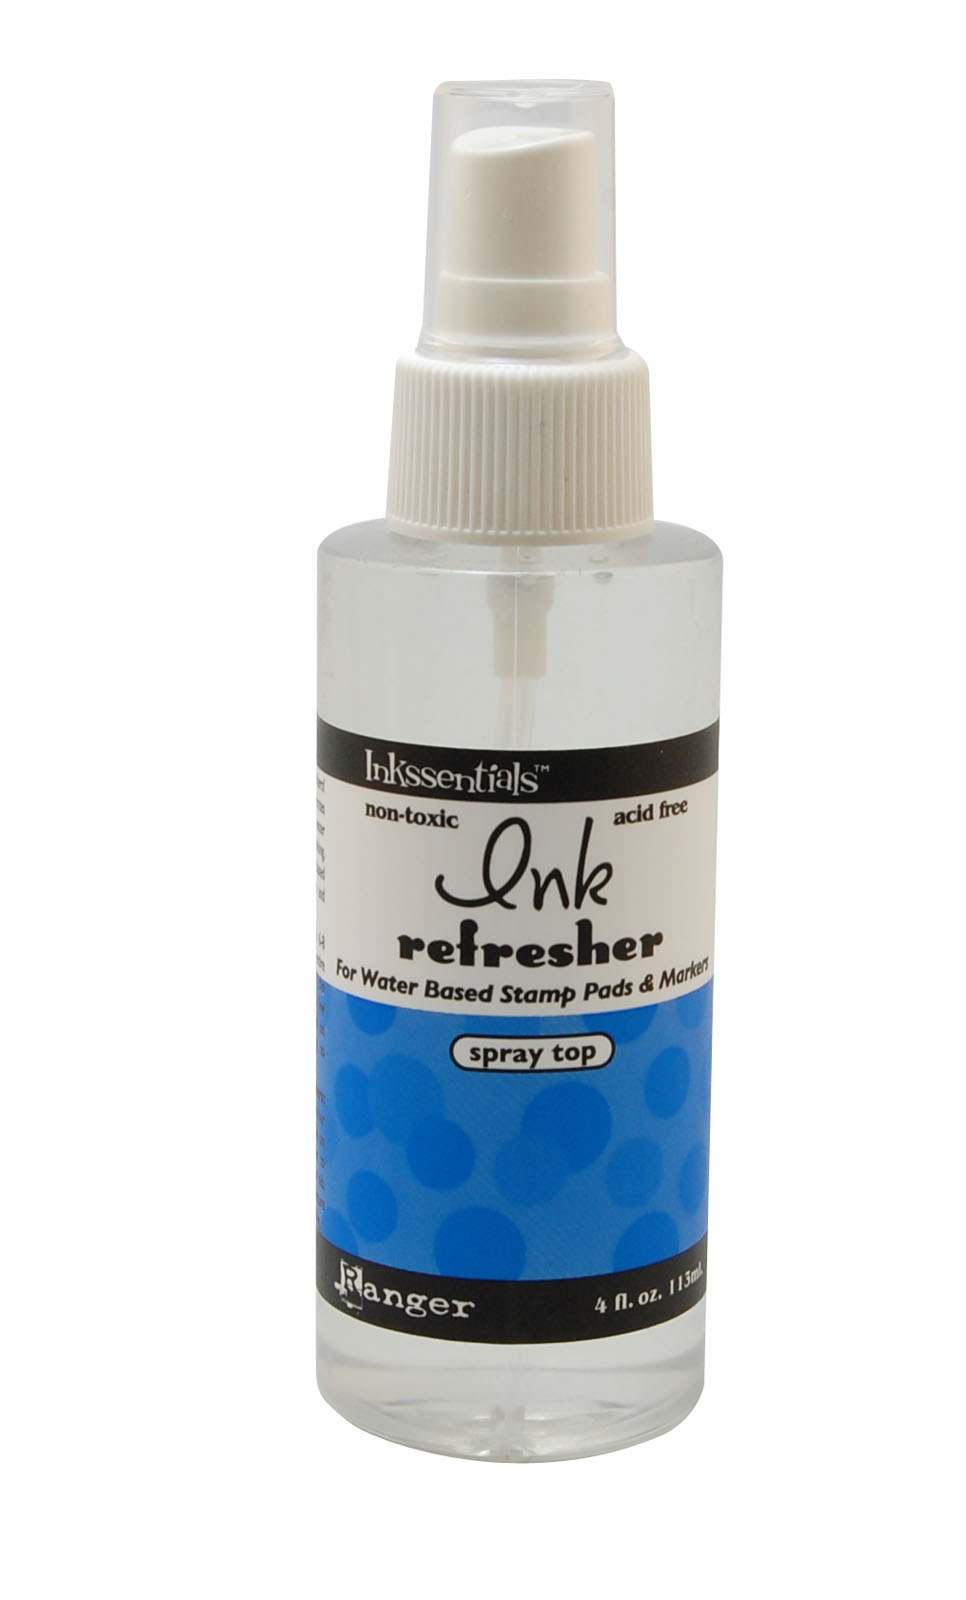 Ranger • Ink refresher 4 oz. 113ml.